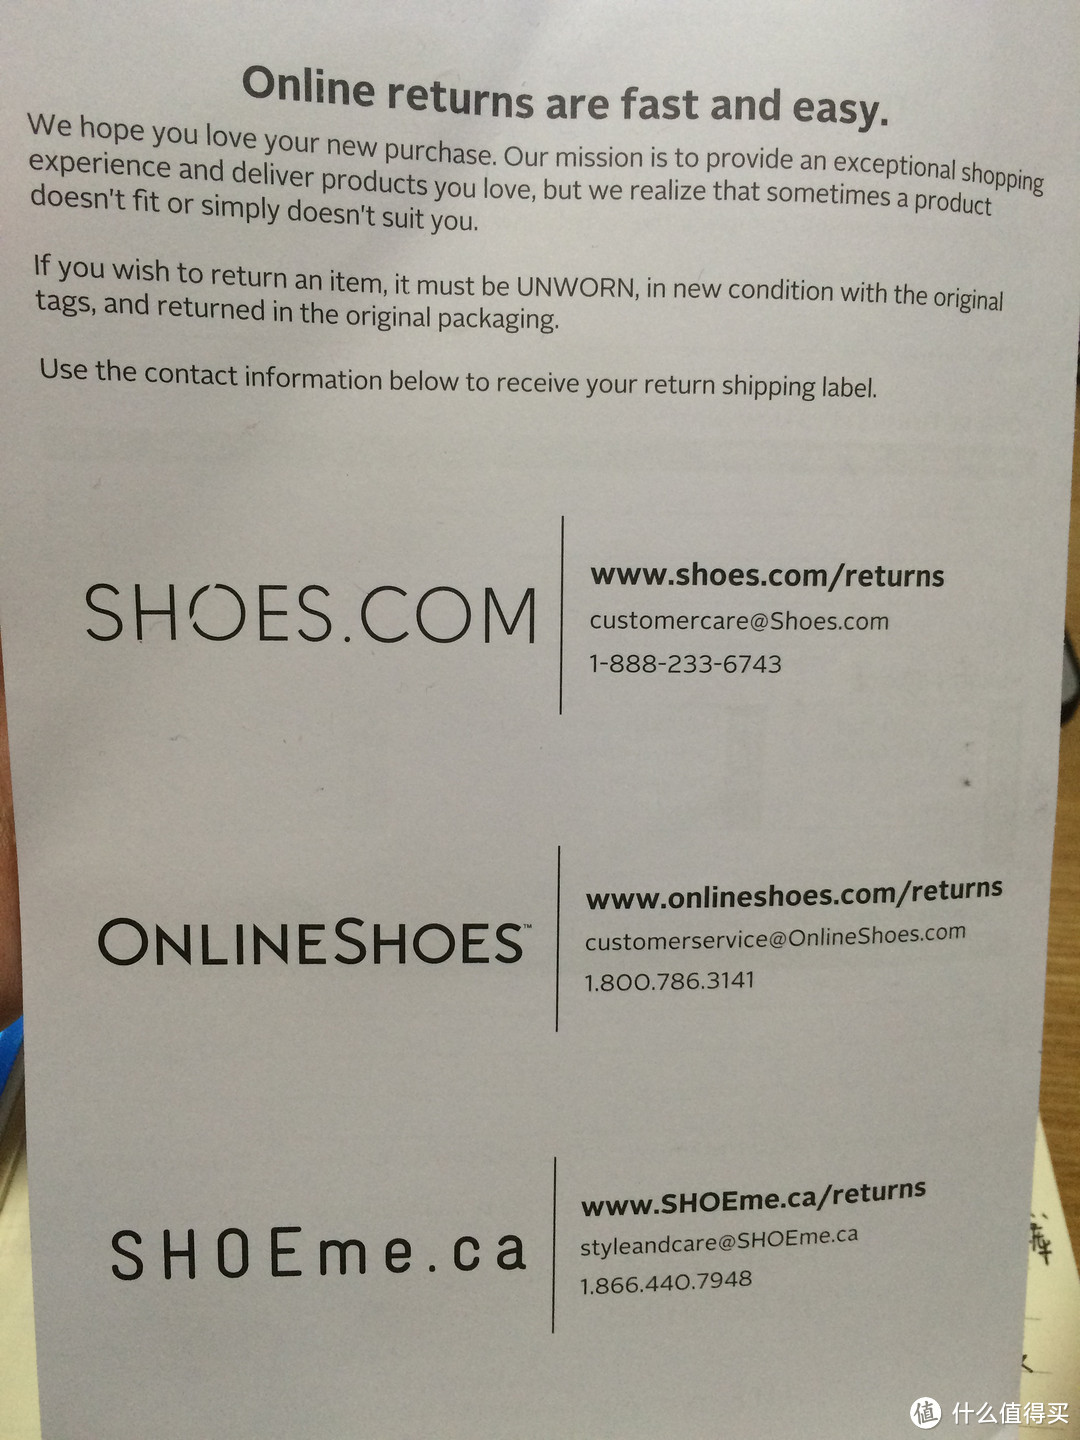 美国淘鞋网站Shoes.com 囤鞋亲测